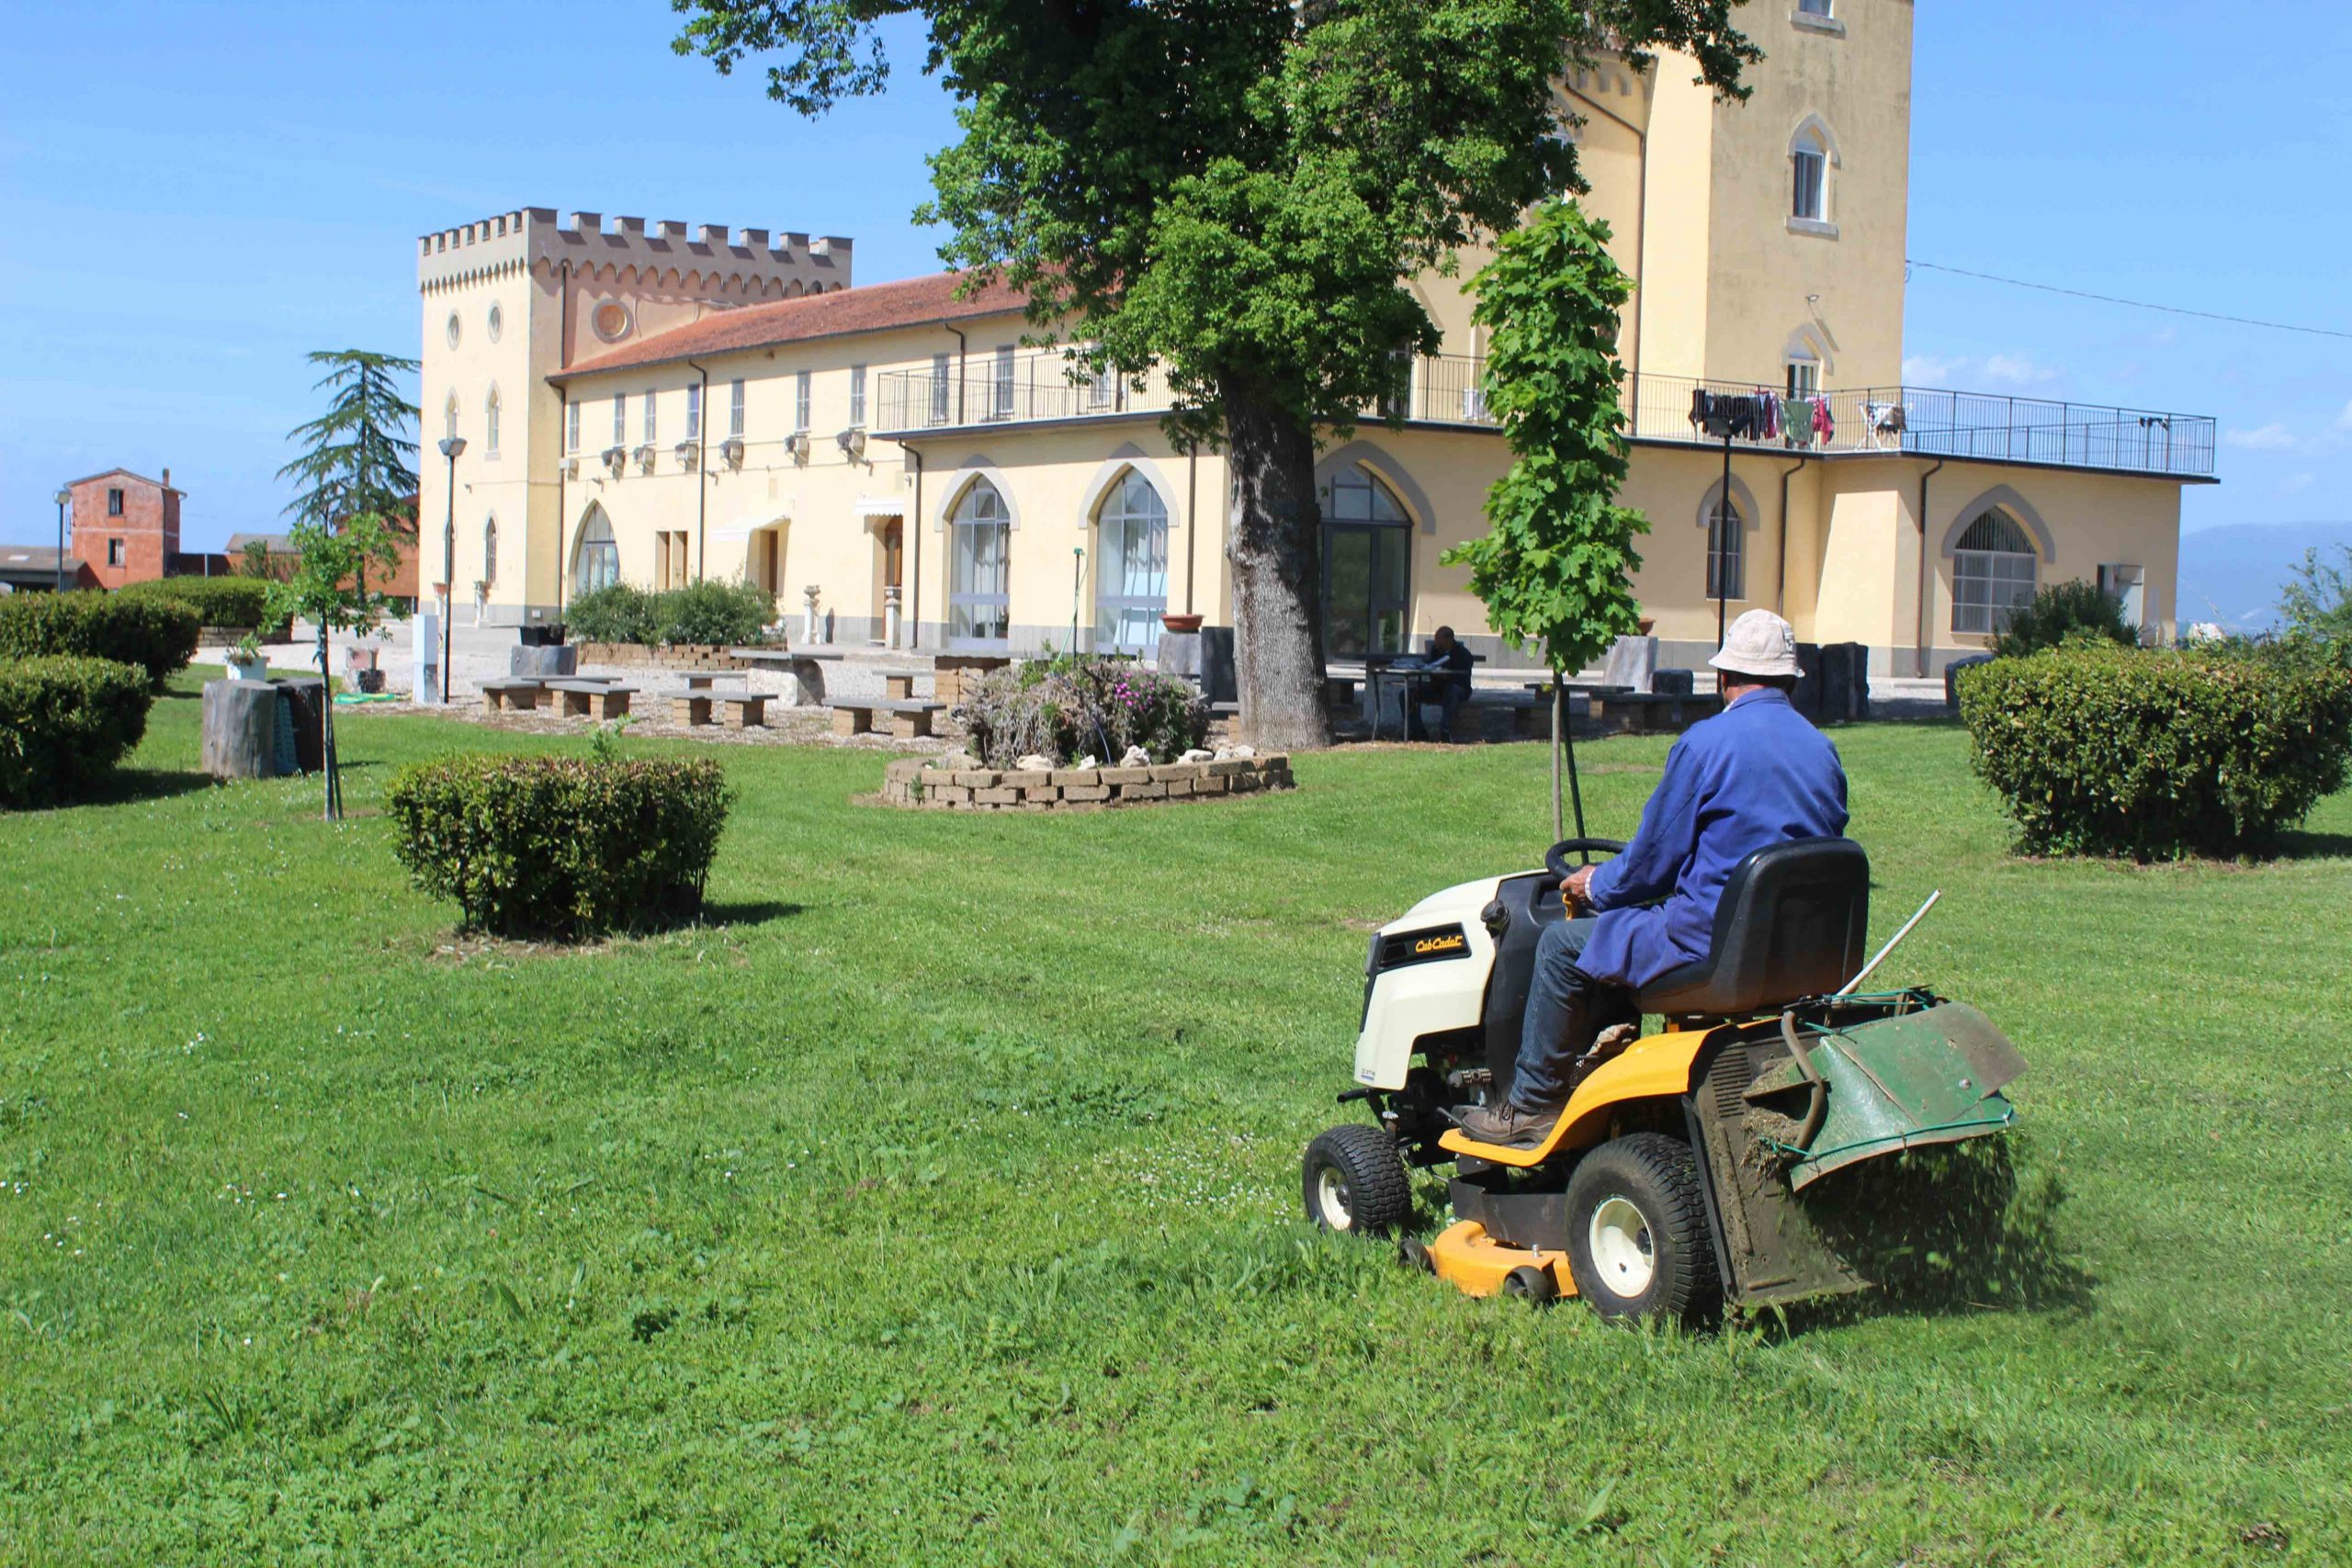 Pian Paradiso VT - Itália, o senhor Eligio Buggi de Rignano Flaminio - VT cortando o gramado na frente do centro missionário.